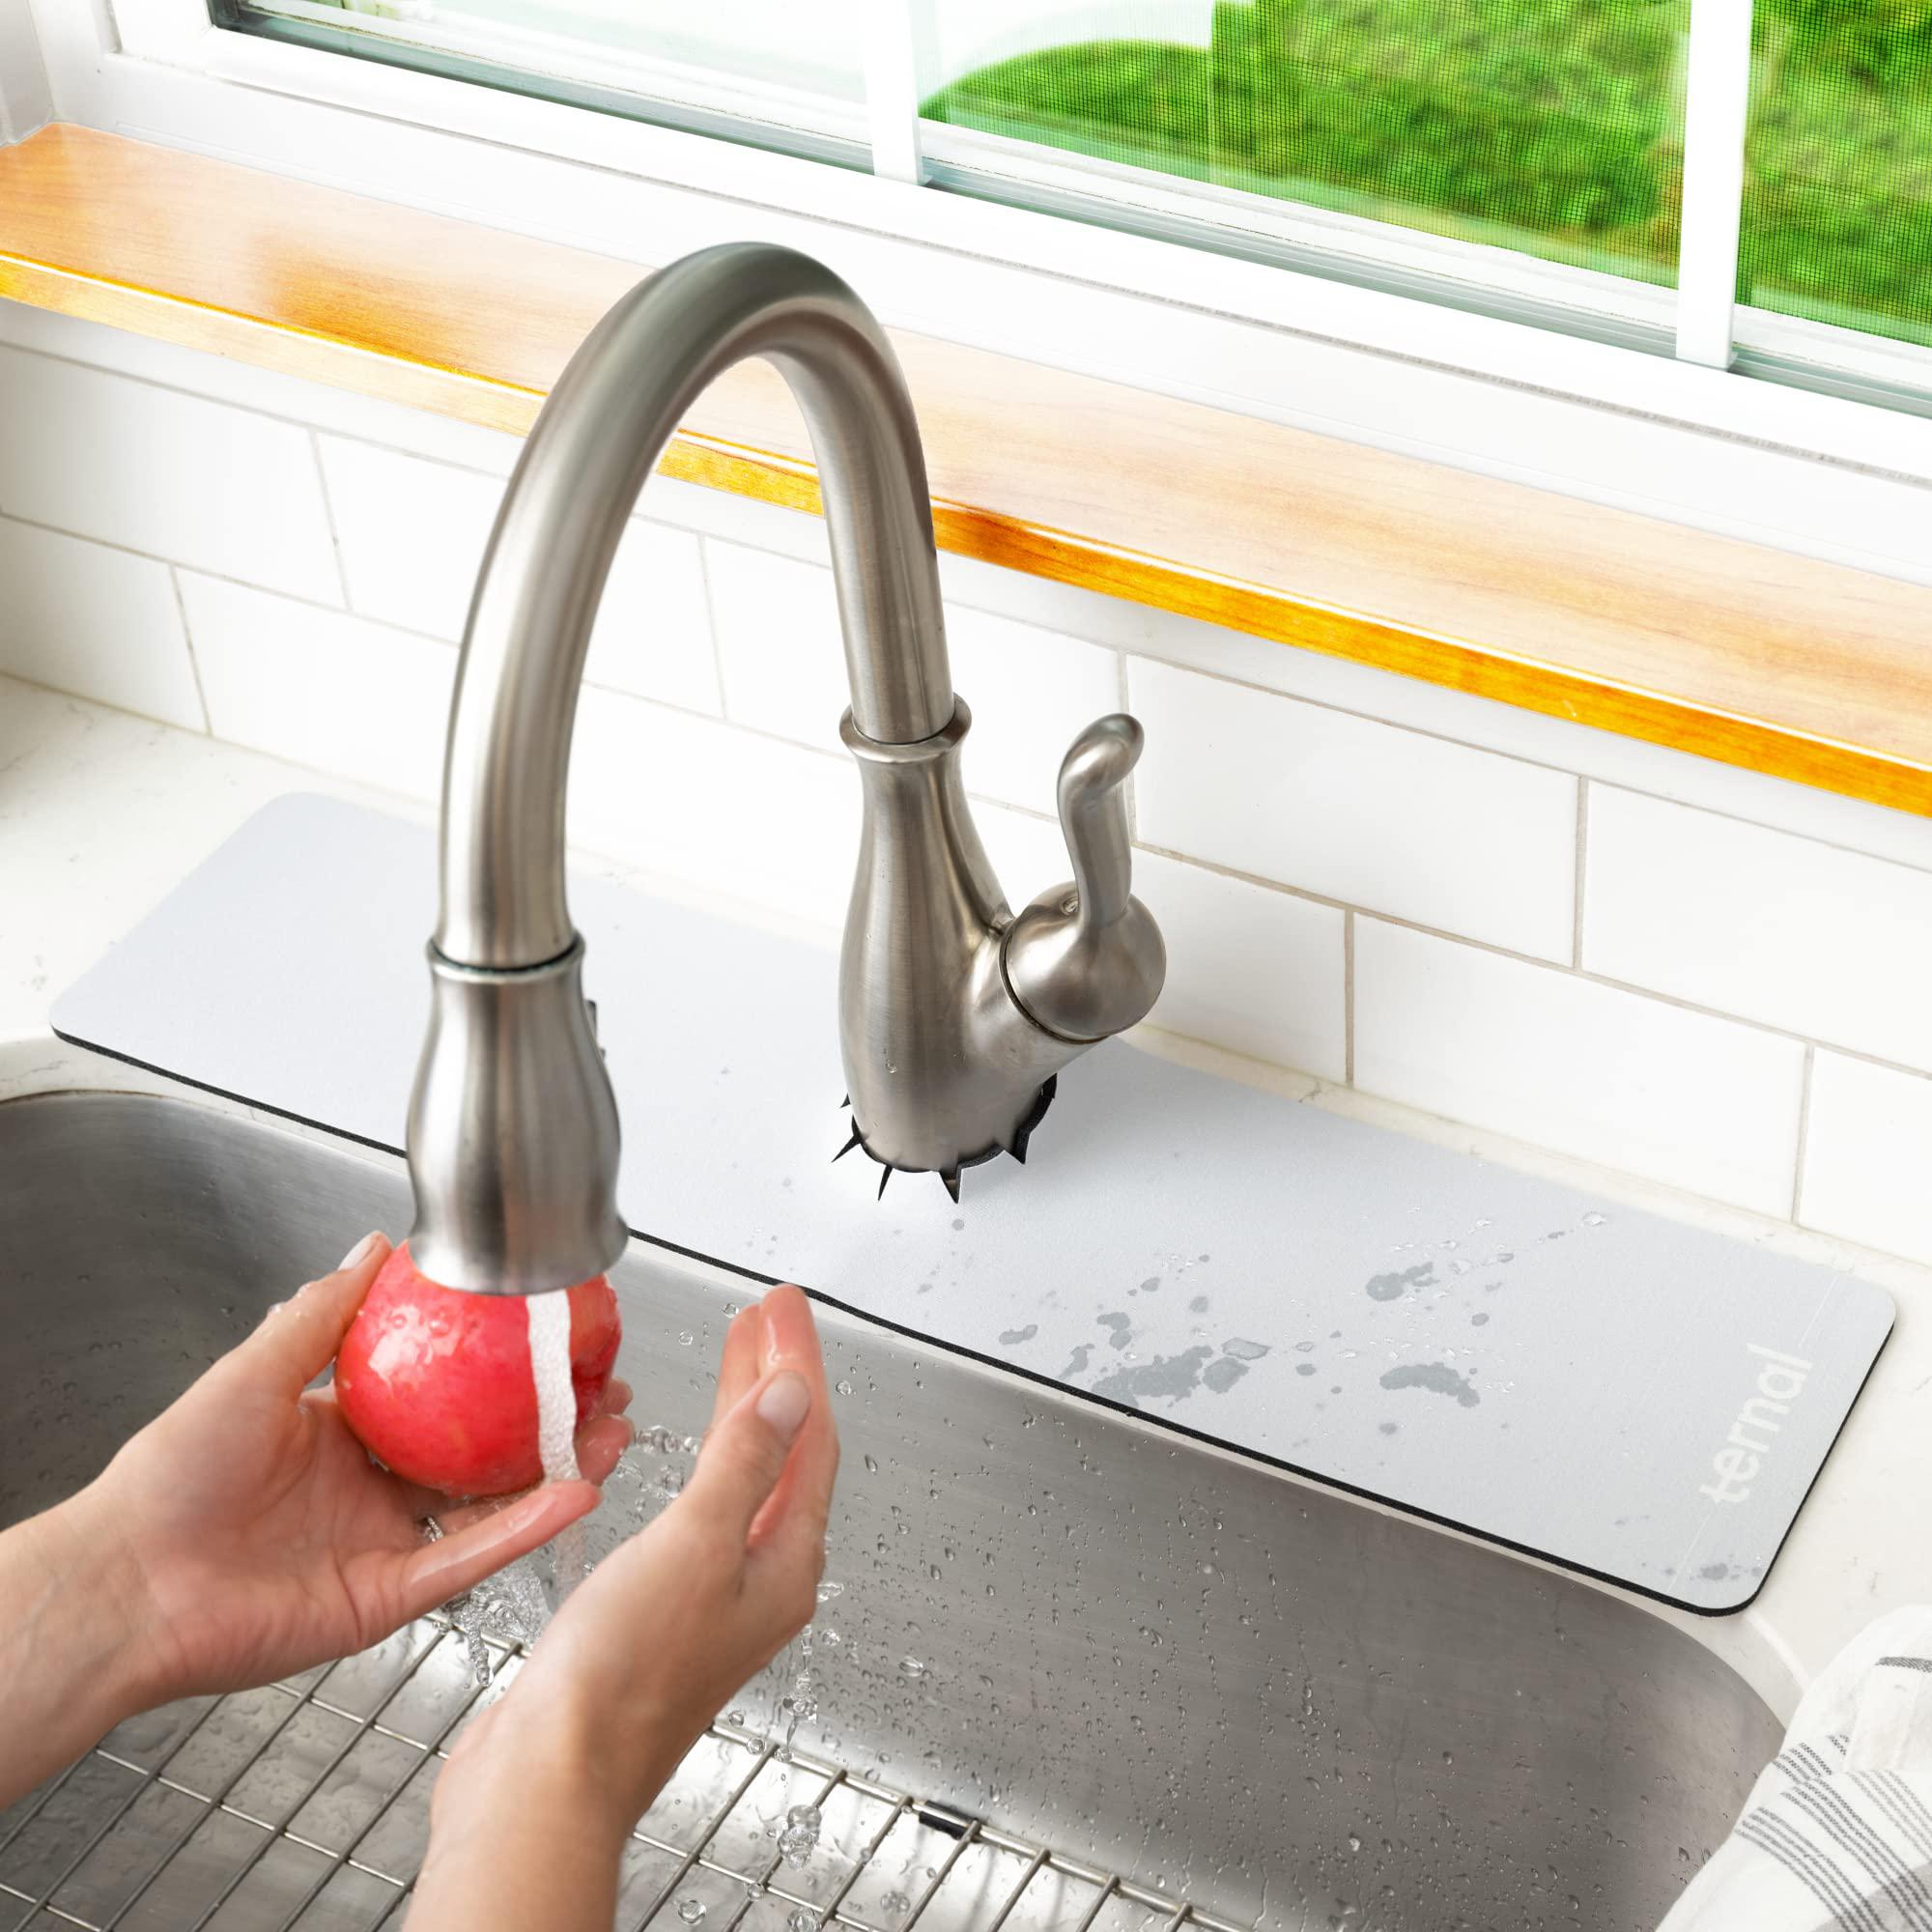 Ternal ternal sinkmat for kitchen sink faucet, absorbent diatom